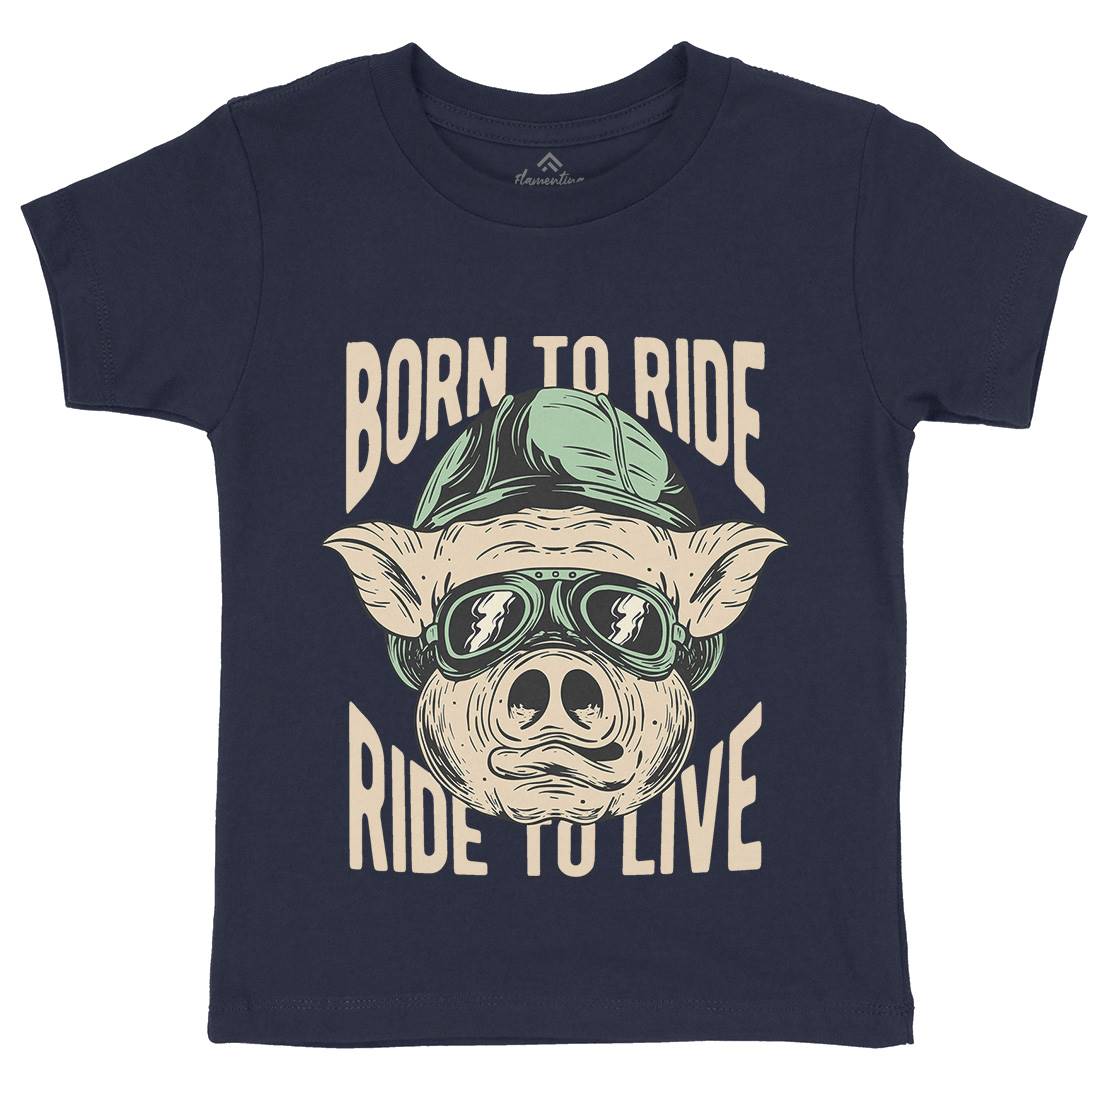 Biker Pig Kids Crew Neck T-Shirt Motorcycles C877